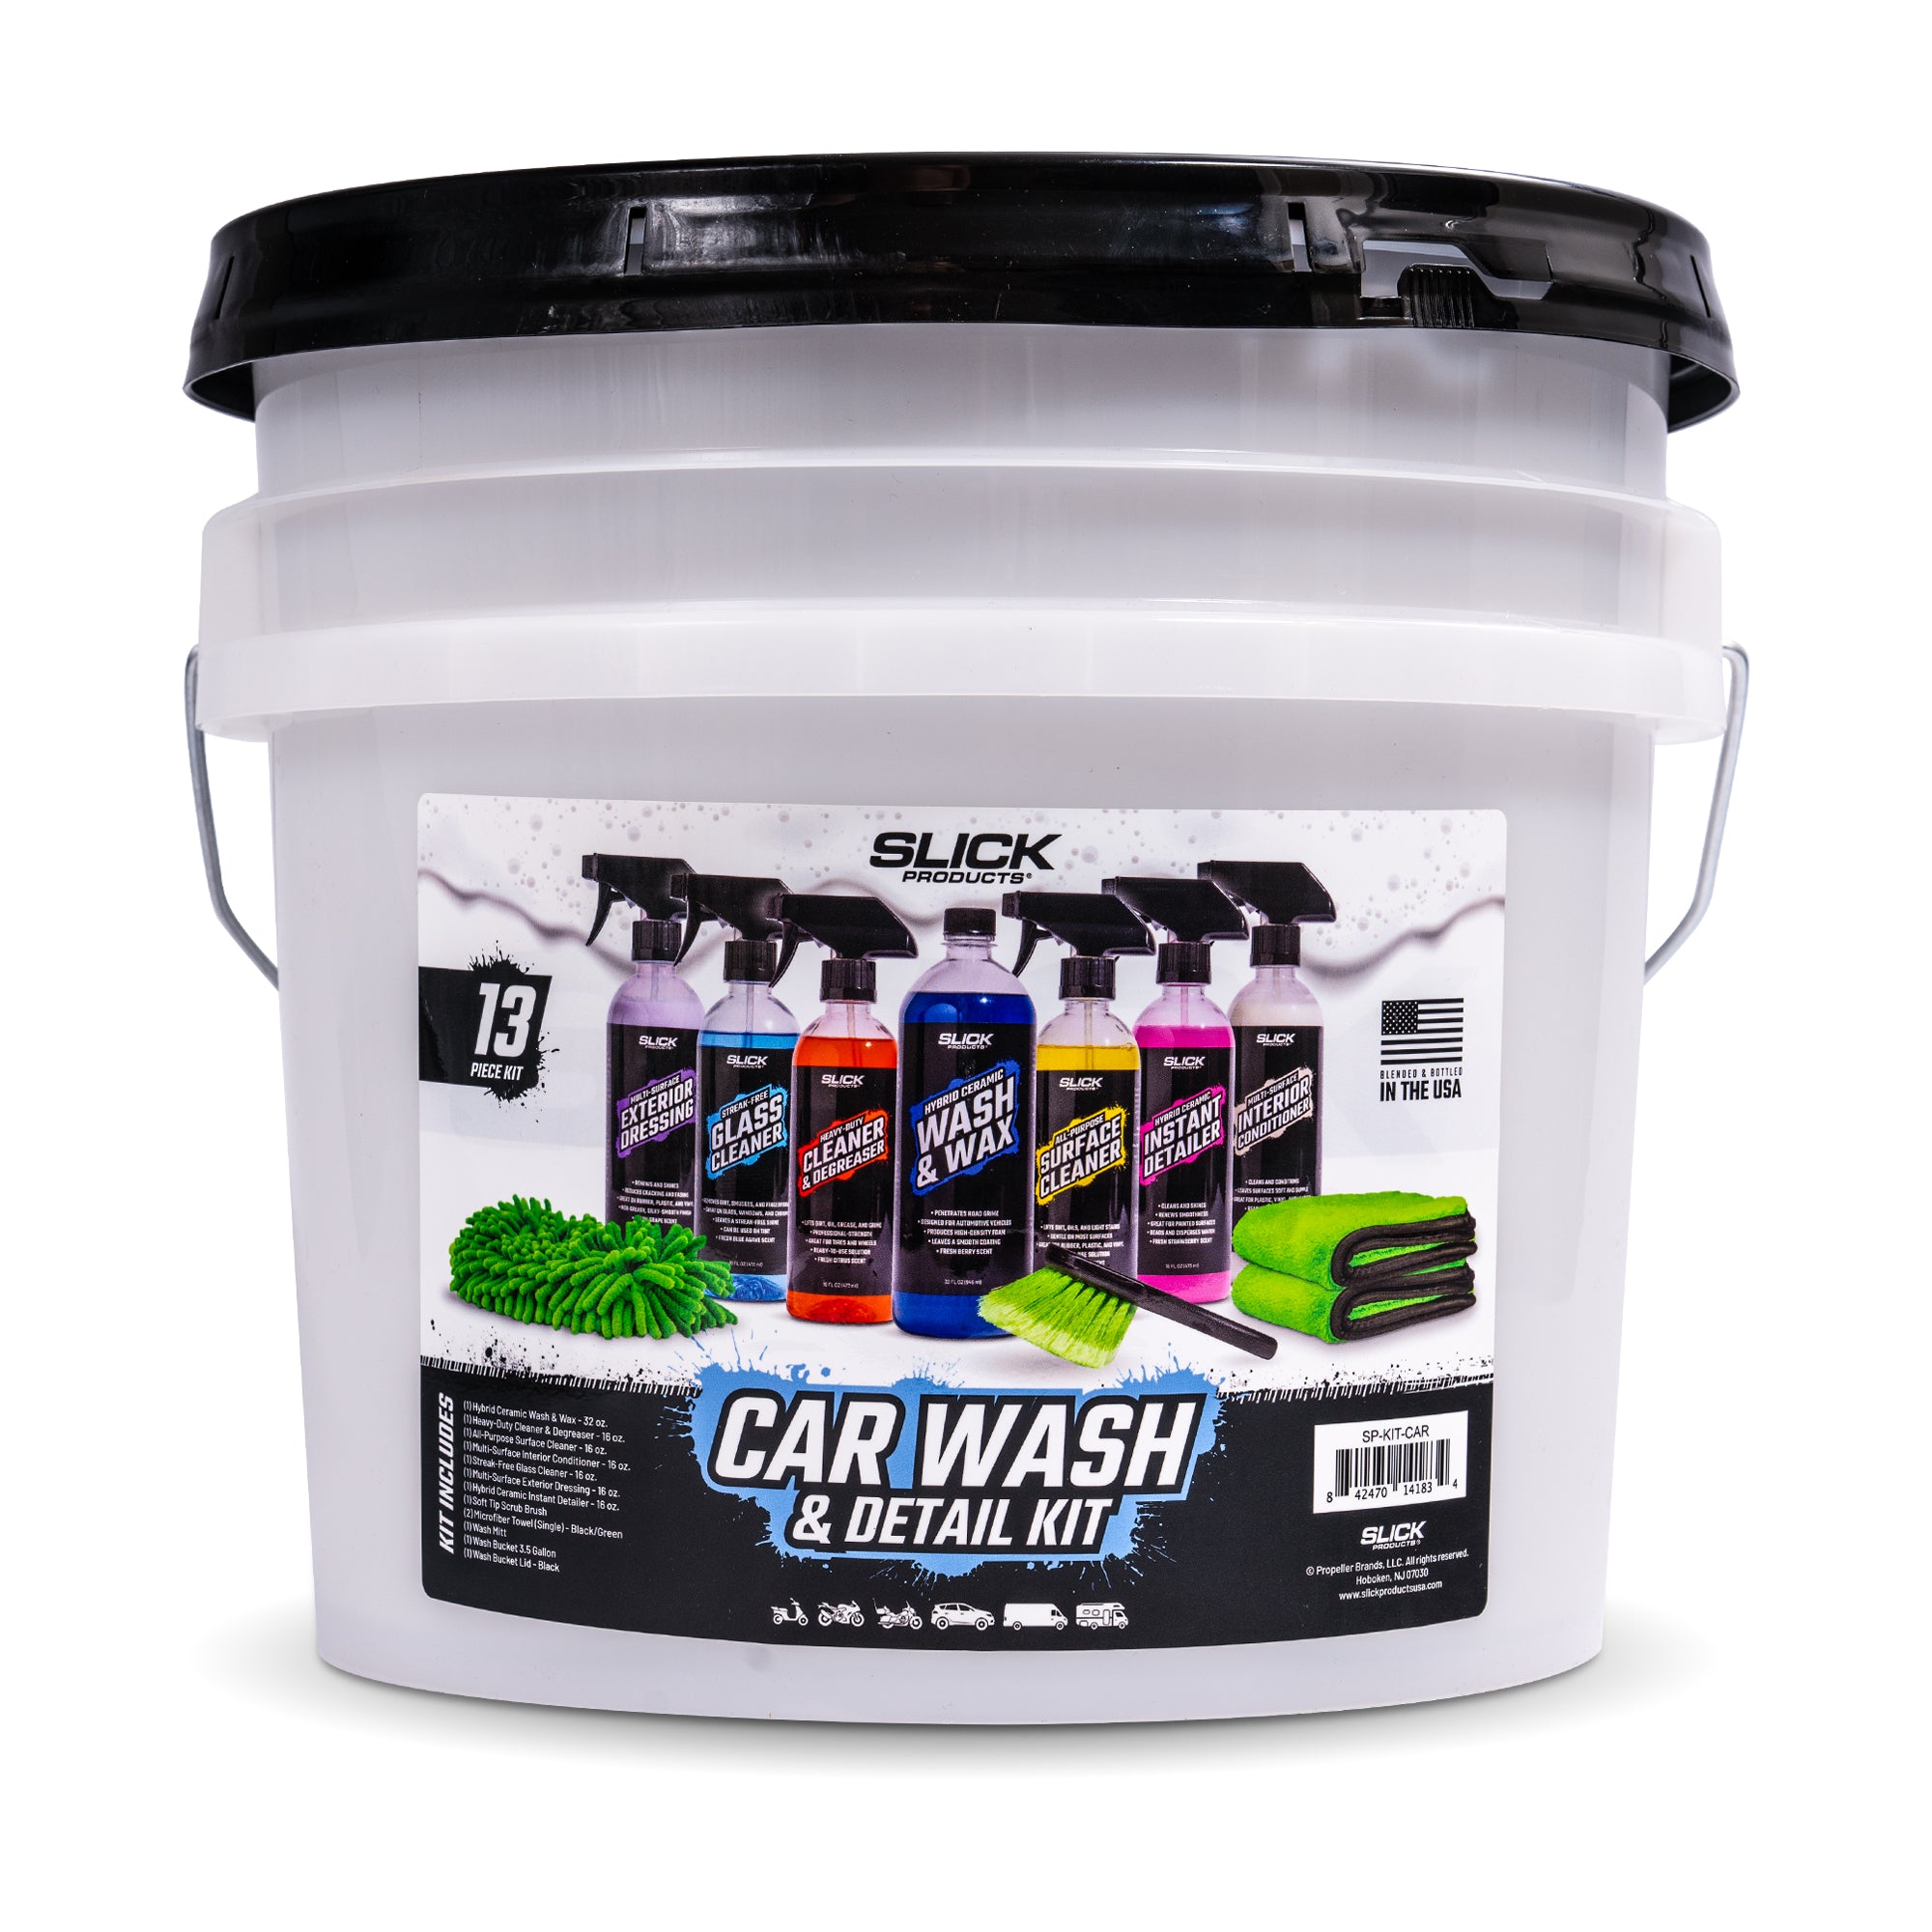 Car Wash & Detail Kit